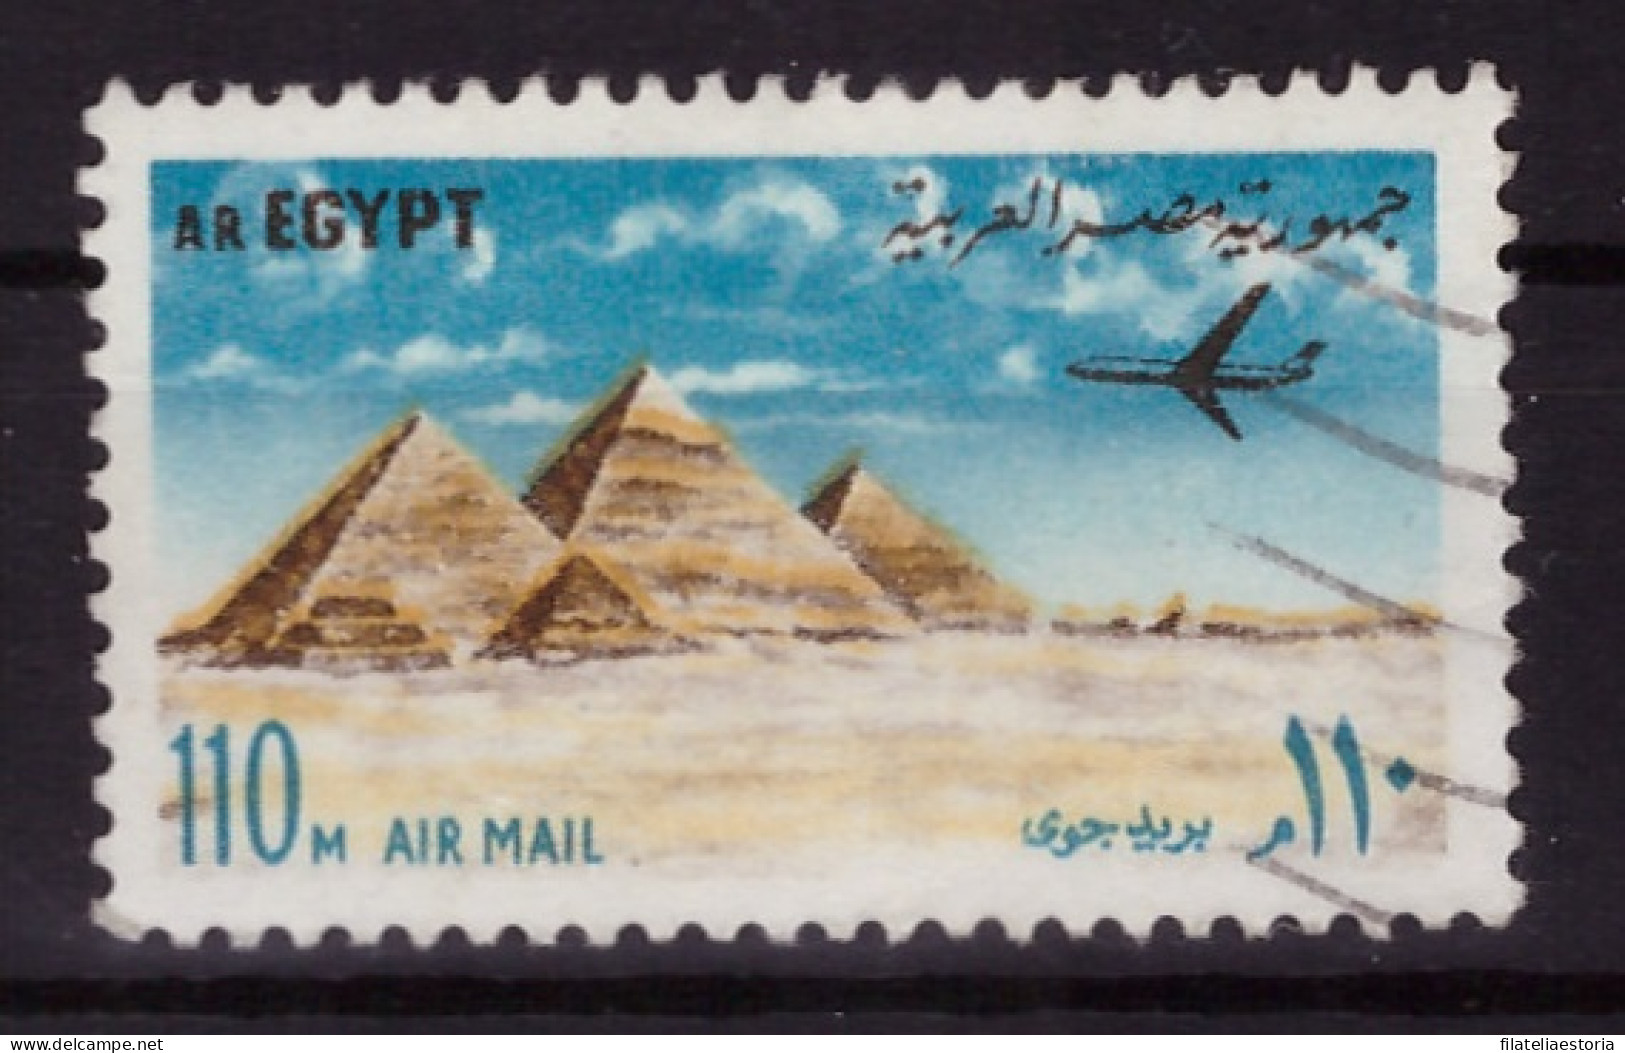 Egypte 1972 - Oblitéré - Monuments - Avions - Michel Nr. 1115 (egy350) - Gebruikt